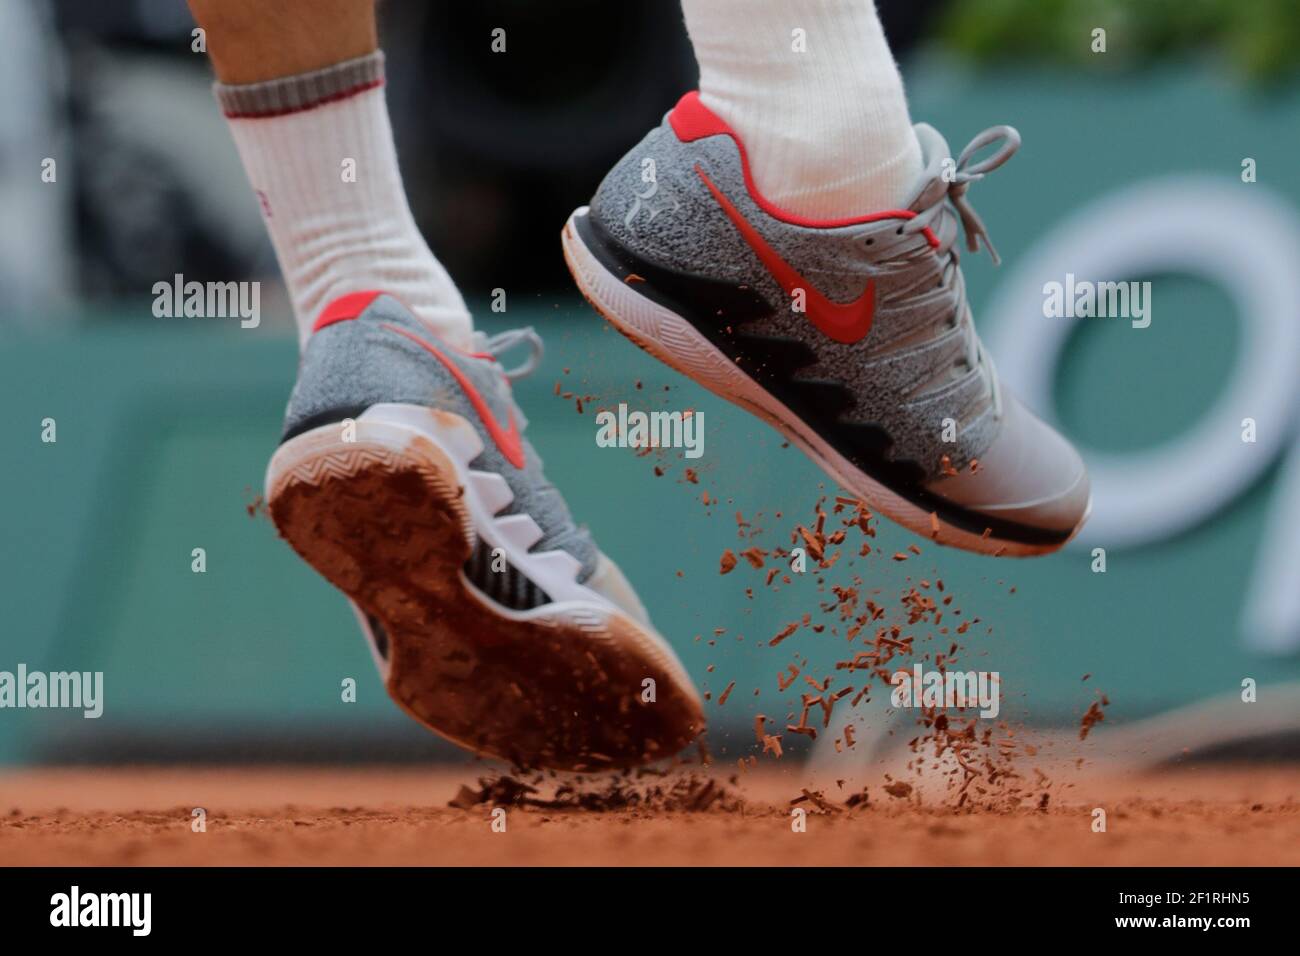 Illustration des chaussures Nike Air Zoom Vapor 2019 de Roger FEDERER (SUI)  lors du Roland-Garros 2019, Grand Chelem tennis Tournament, tirage pour  hommes le 4 juin 2019 au stade Roland-Garros à Paris,